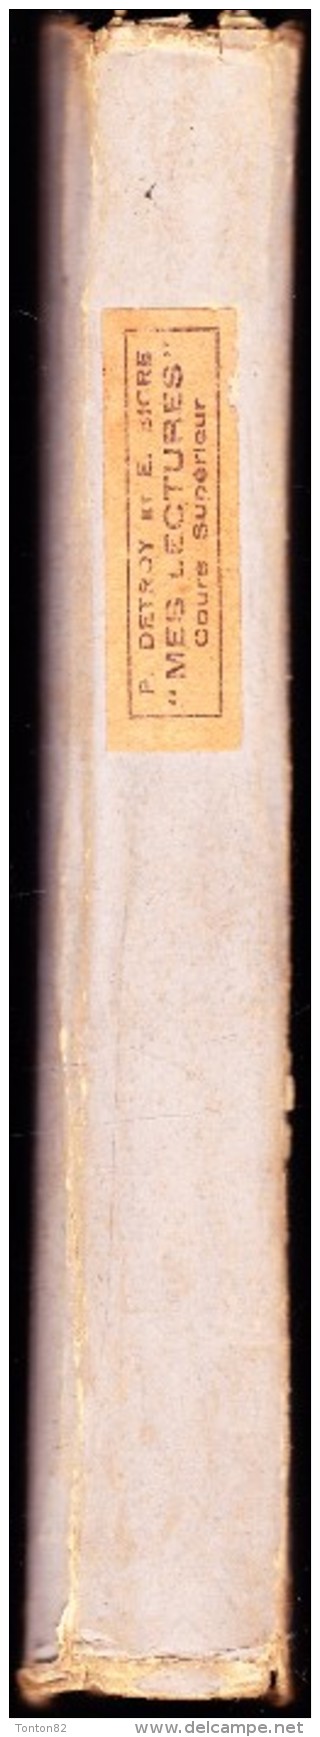 P. Detroy - Mes Lectures - Cours Supérieur - Éditions A. Moynier - ( 1947 ) . - 6-12 Anni